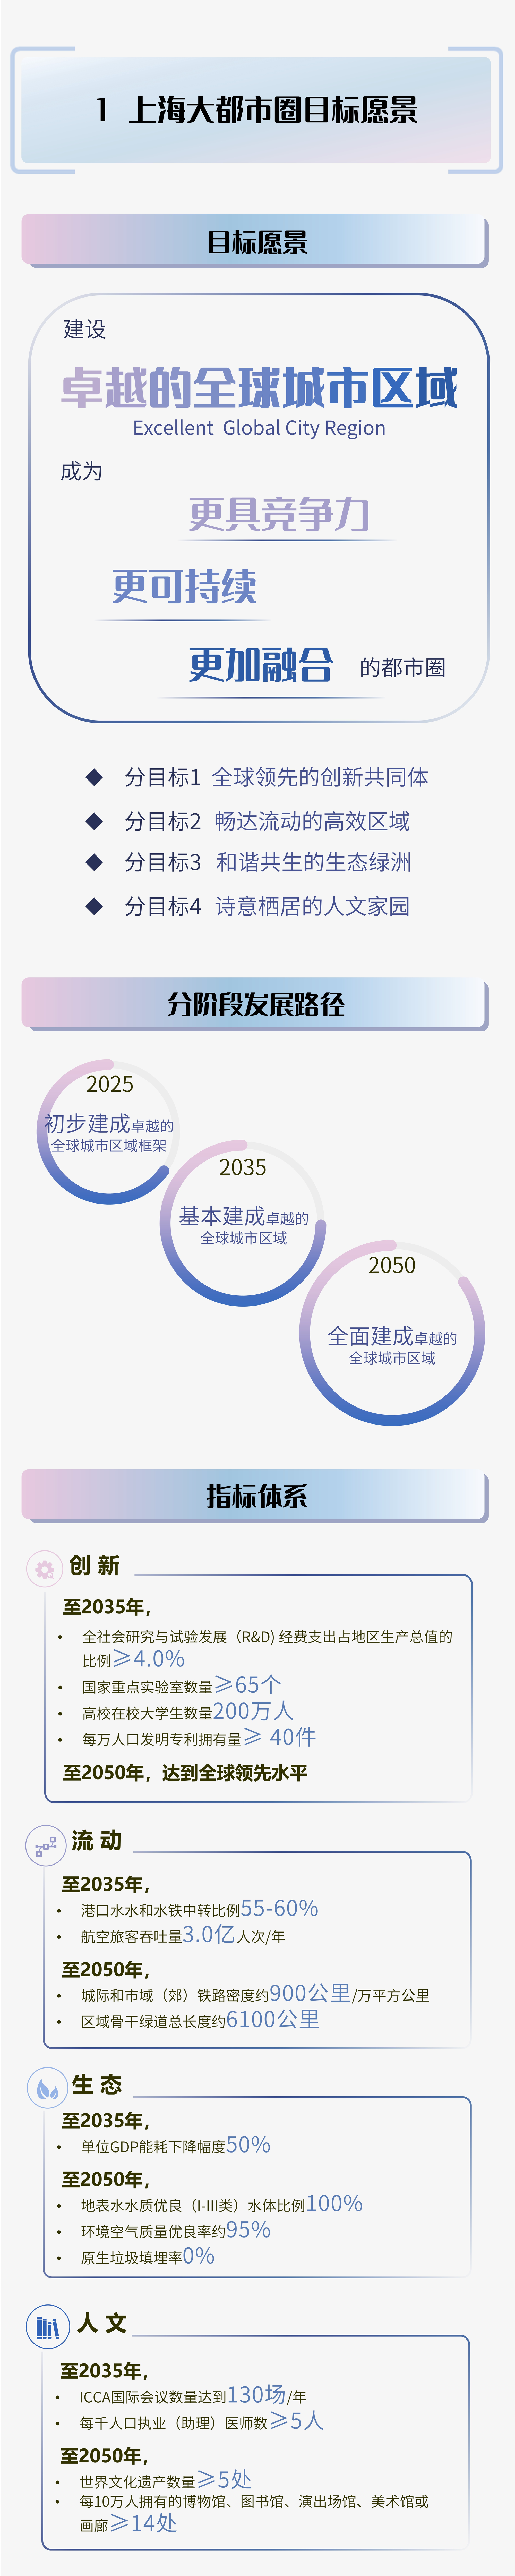 上海大都市圈空间协同规划一张图-04.jpg